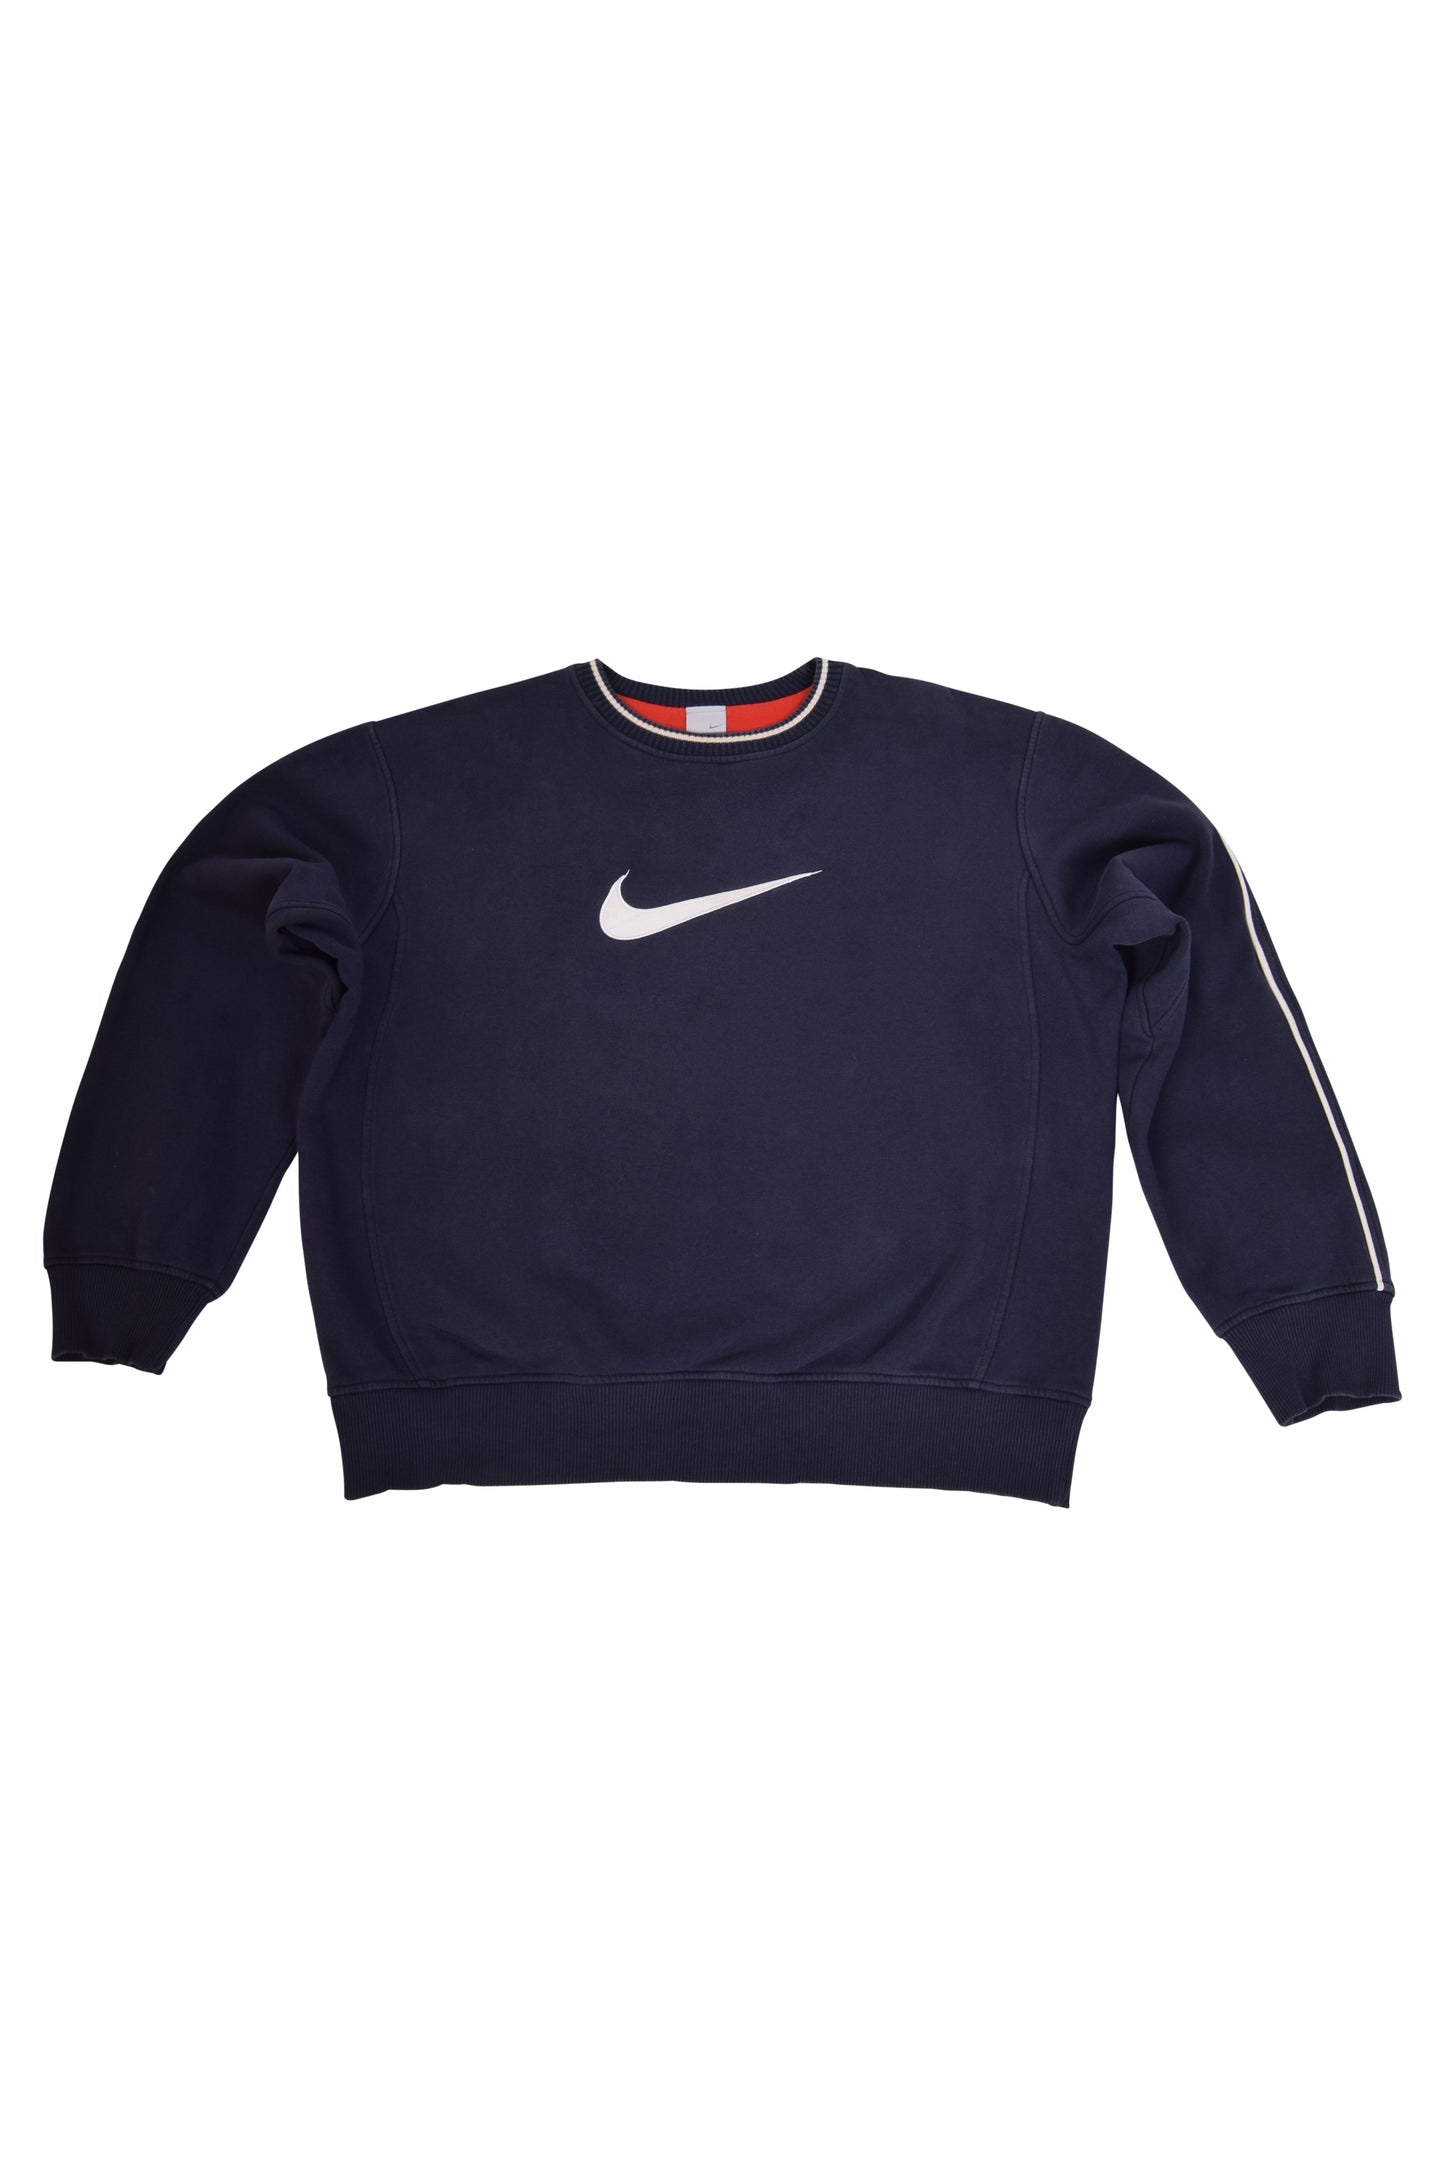 Nike Sweatshirt '00's Blue Size L